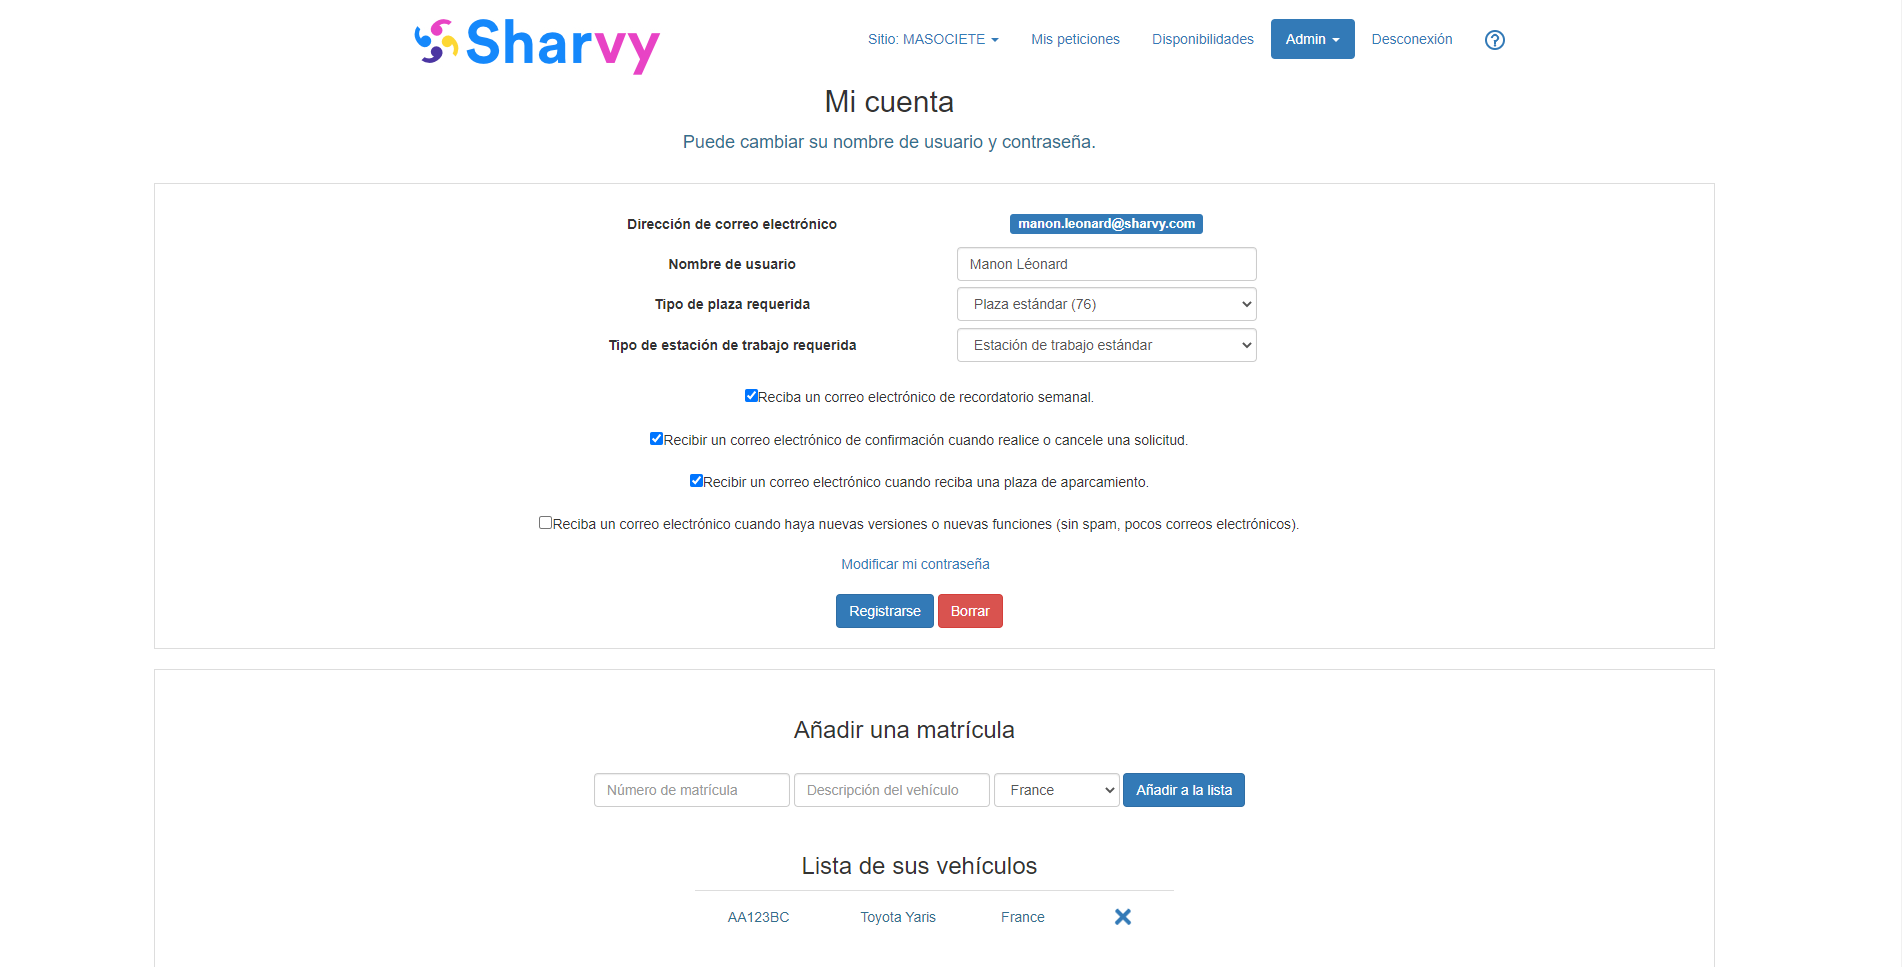 Sharvy - Página "Mi cuenta": configuración de su tipo de asiento, su vehículo, sus preferencias...